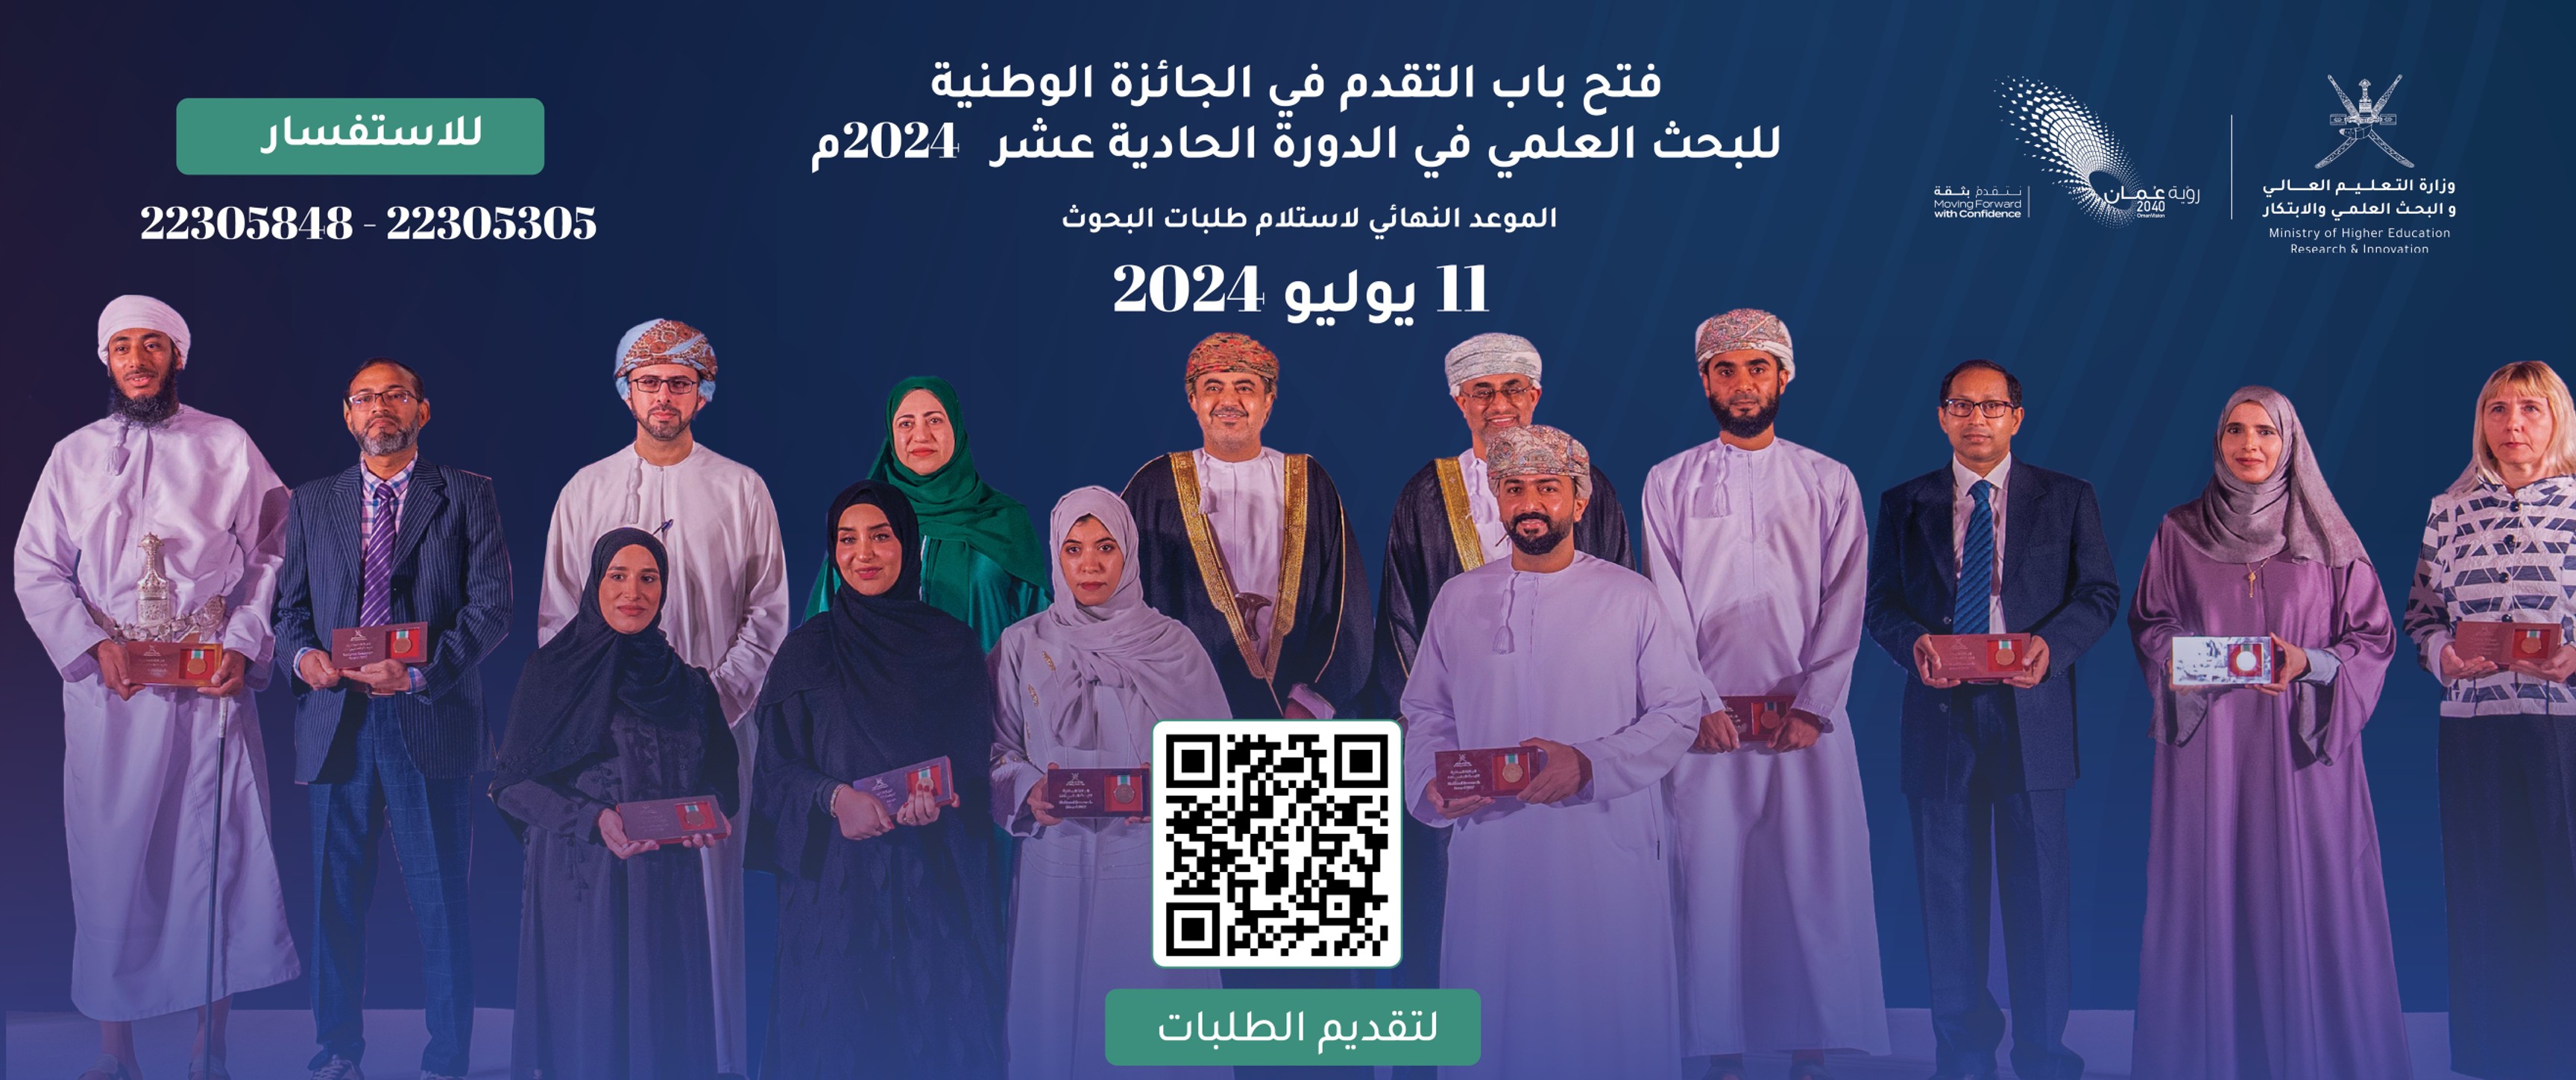 The National Research Award, Oman, الجائزة الوطنية للبحث العلمي 2024 ,وزارة التعليم العالي والبحث العلمي و الابتكار ,سلطنة عمان